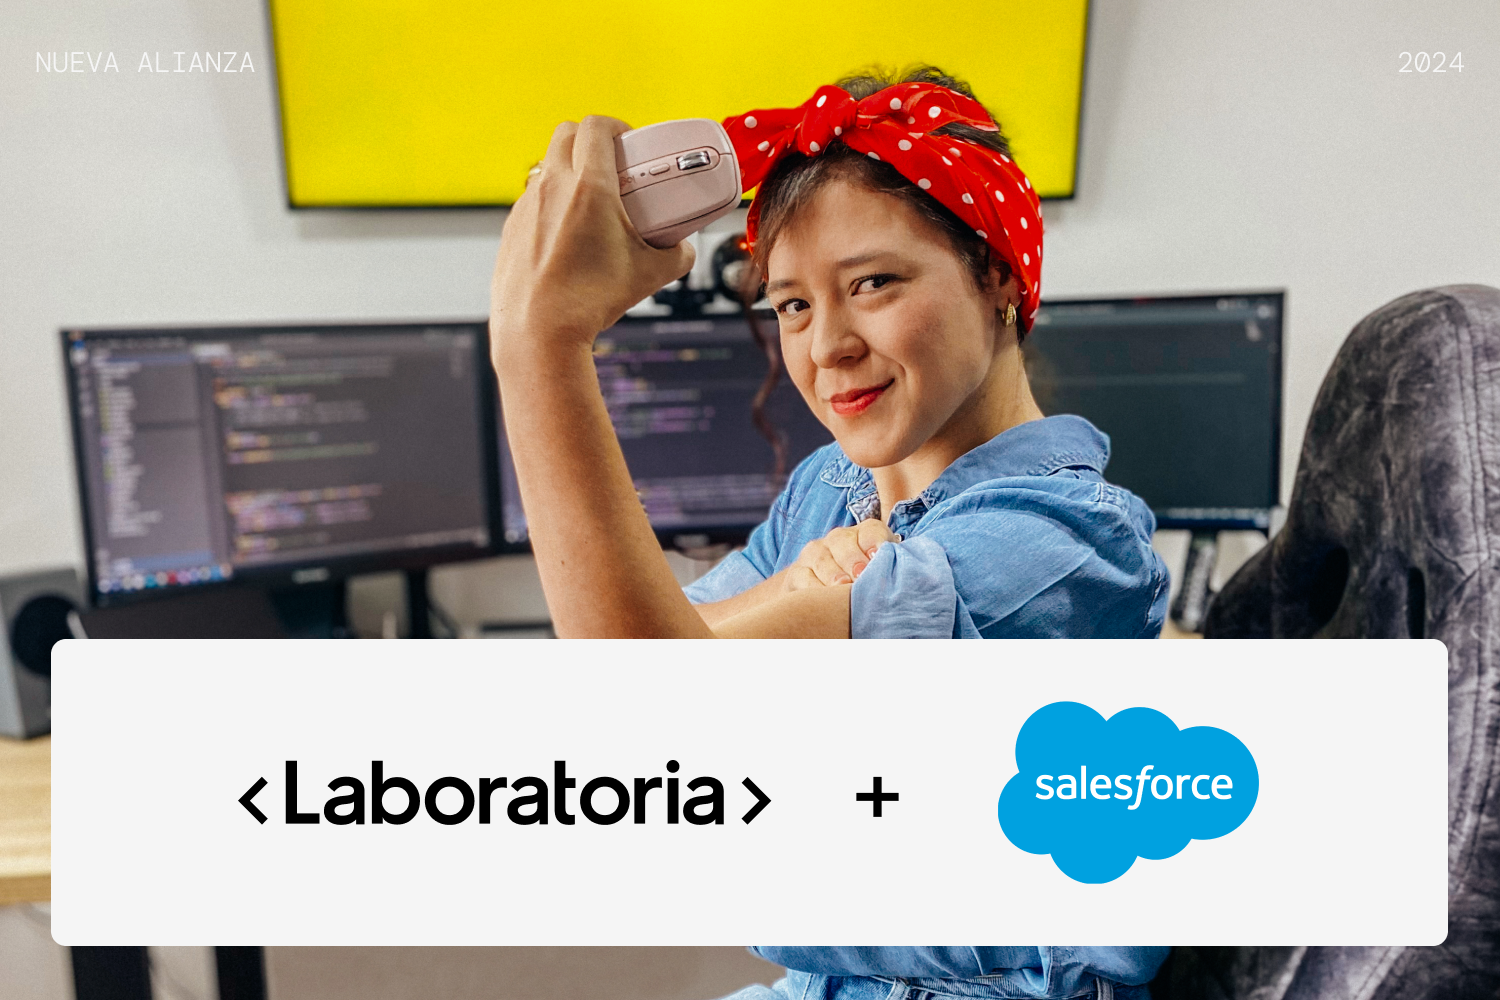 Laboratoria y Salesforce unen fuerzas para impulsar la empleabilidad de mujeres en tecnología. Programa de capacitación en habilidades de Salesforce para egresadas. ¡Inclusión y desarrollo en la industria tecnológica!